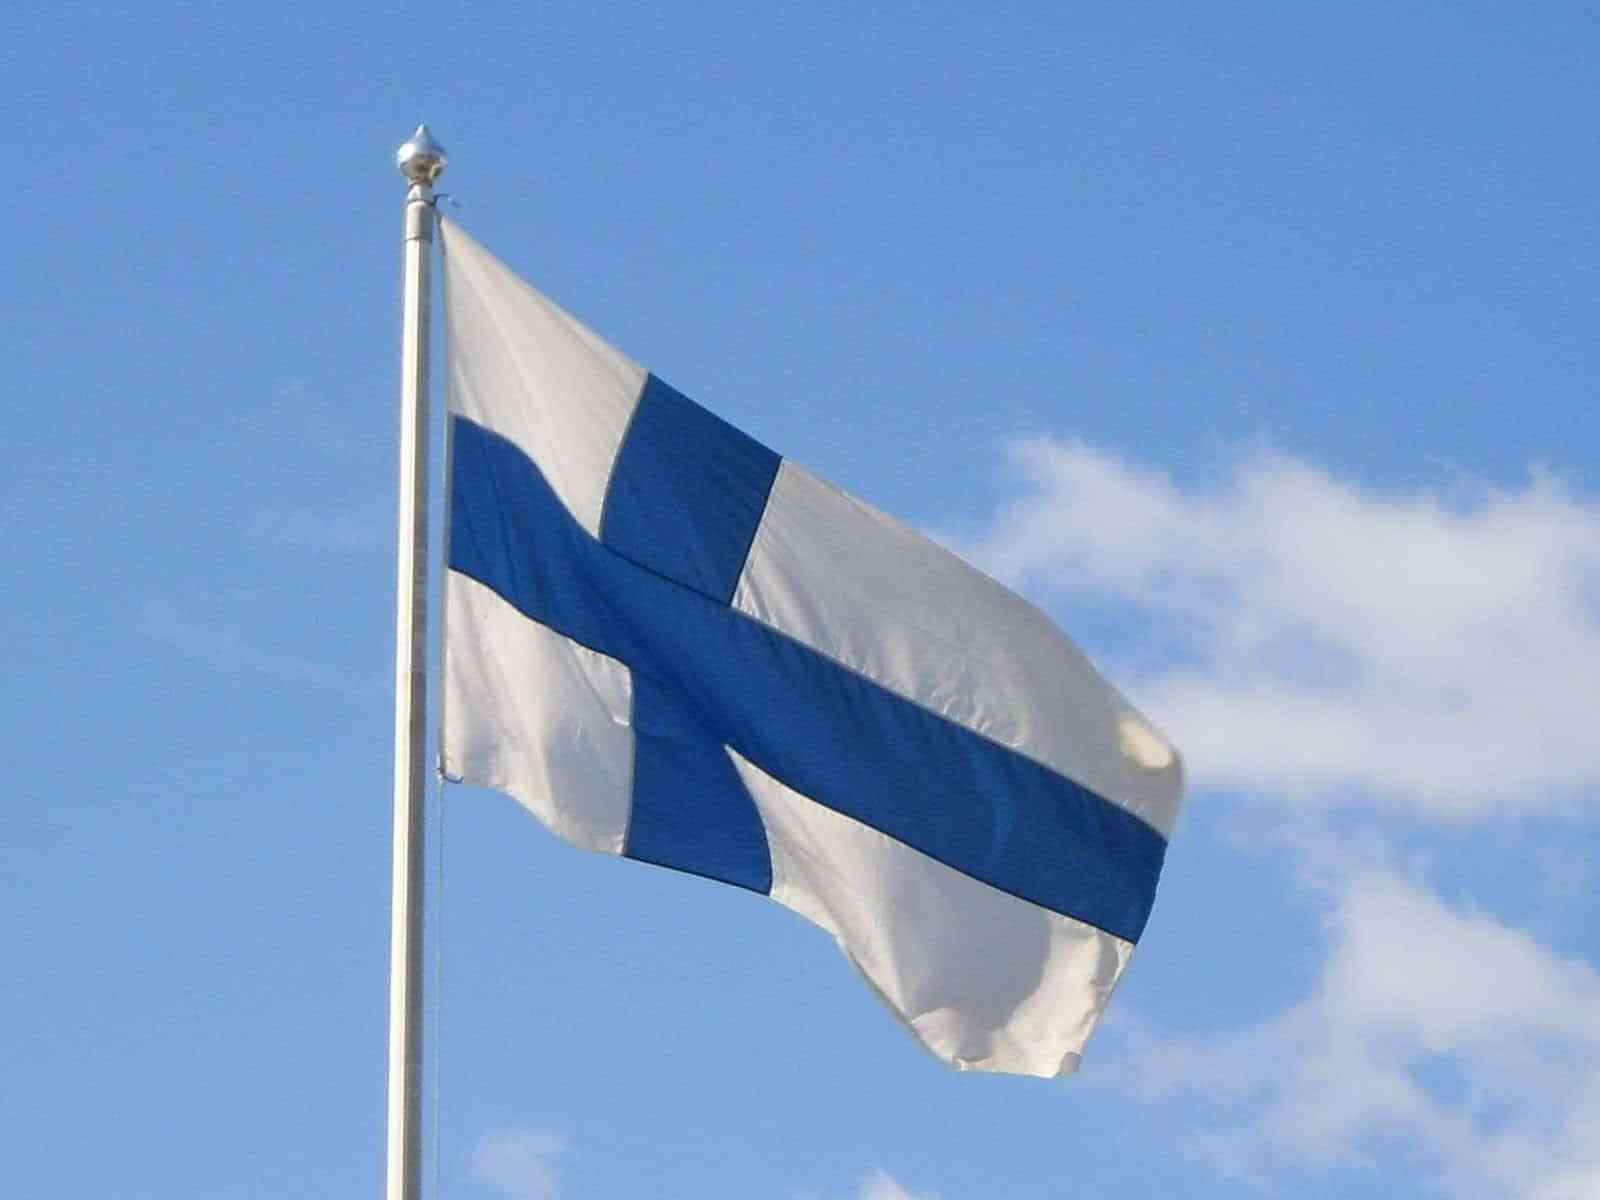 الهجرة إلى فنلندا